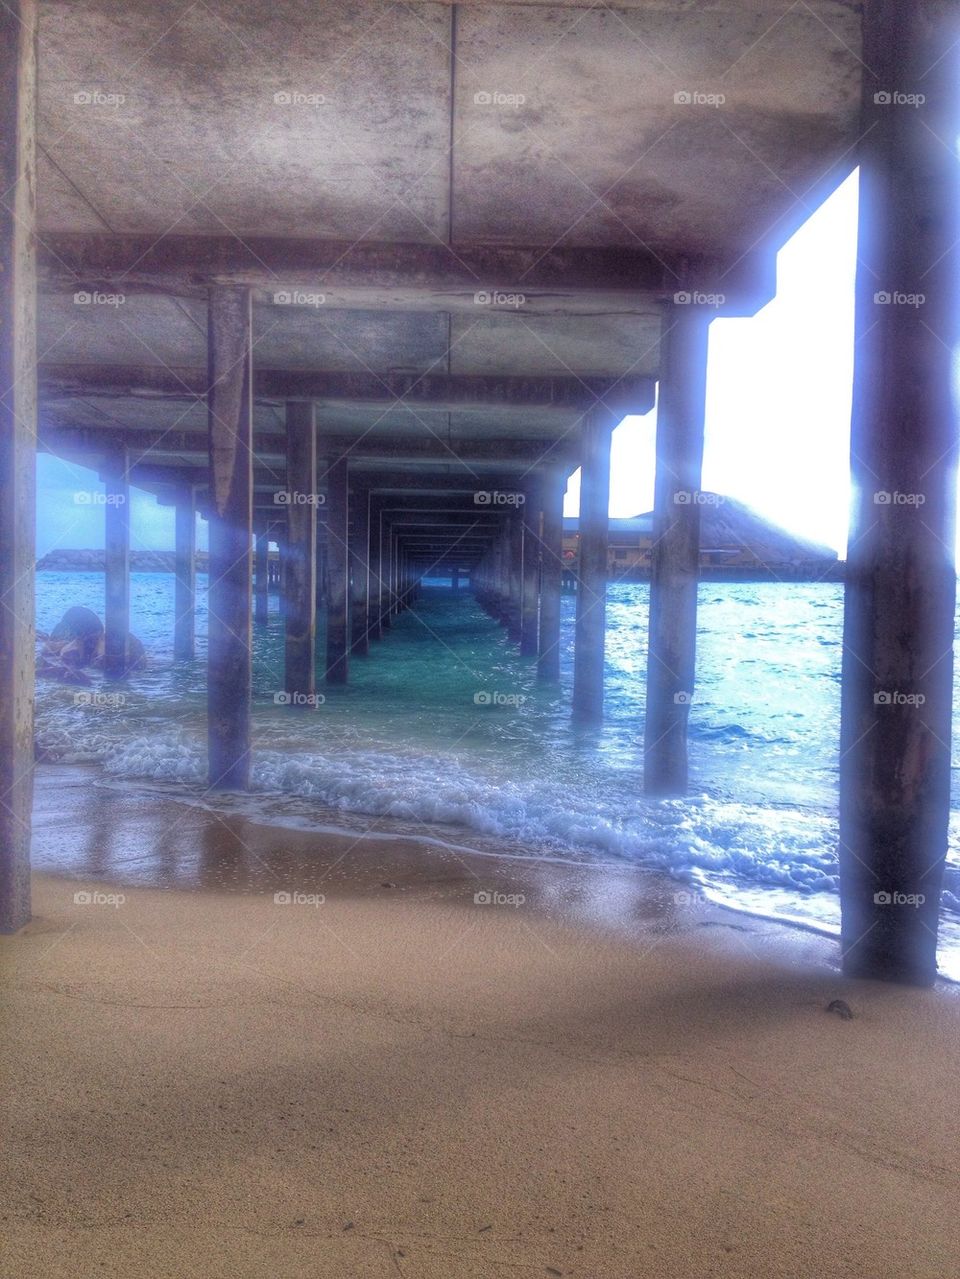 Under The Boardwalk